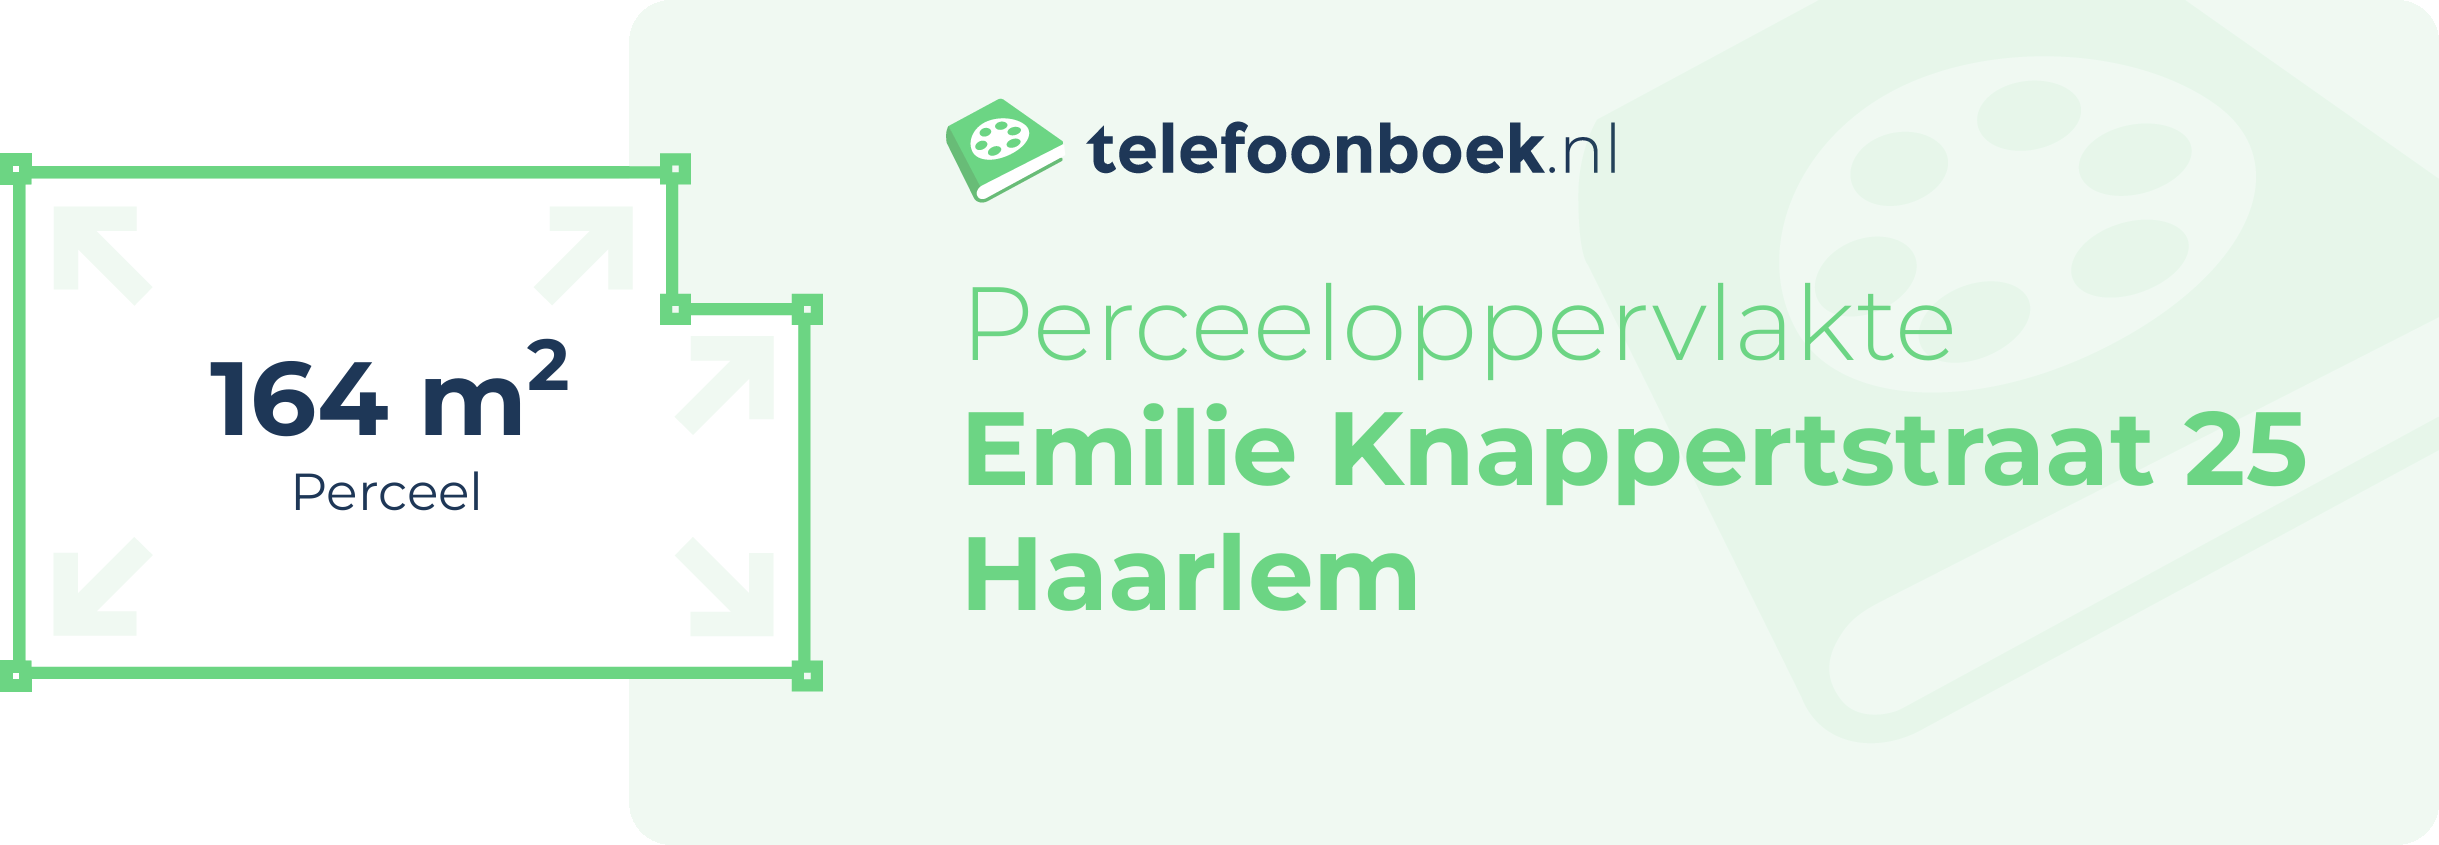 Perceeloppervlakte Emilie Knappertstraat 25 Haarlem